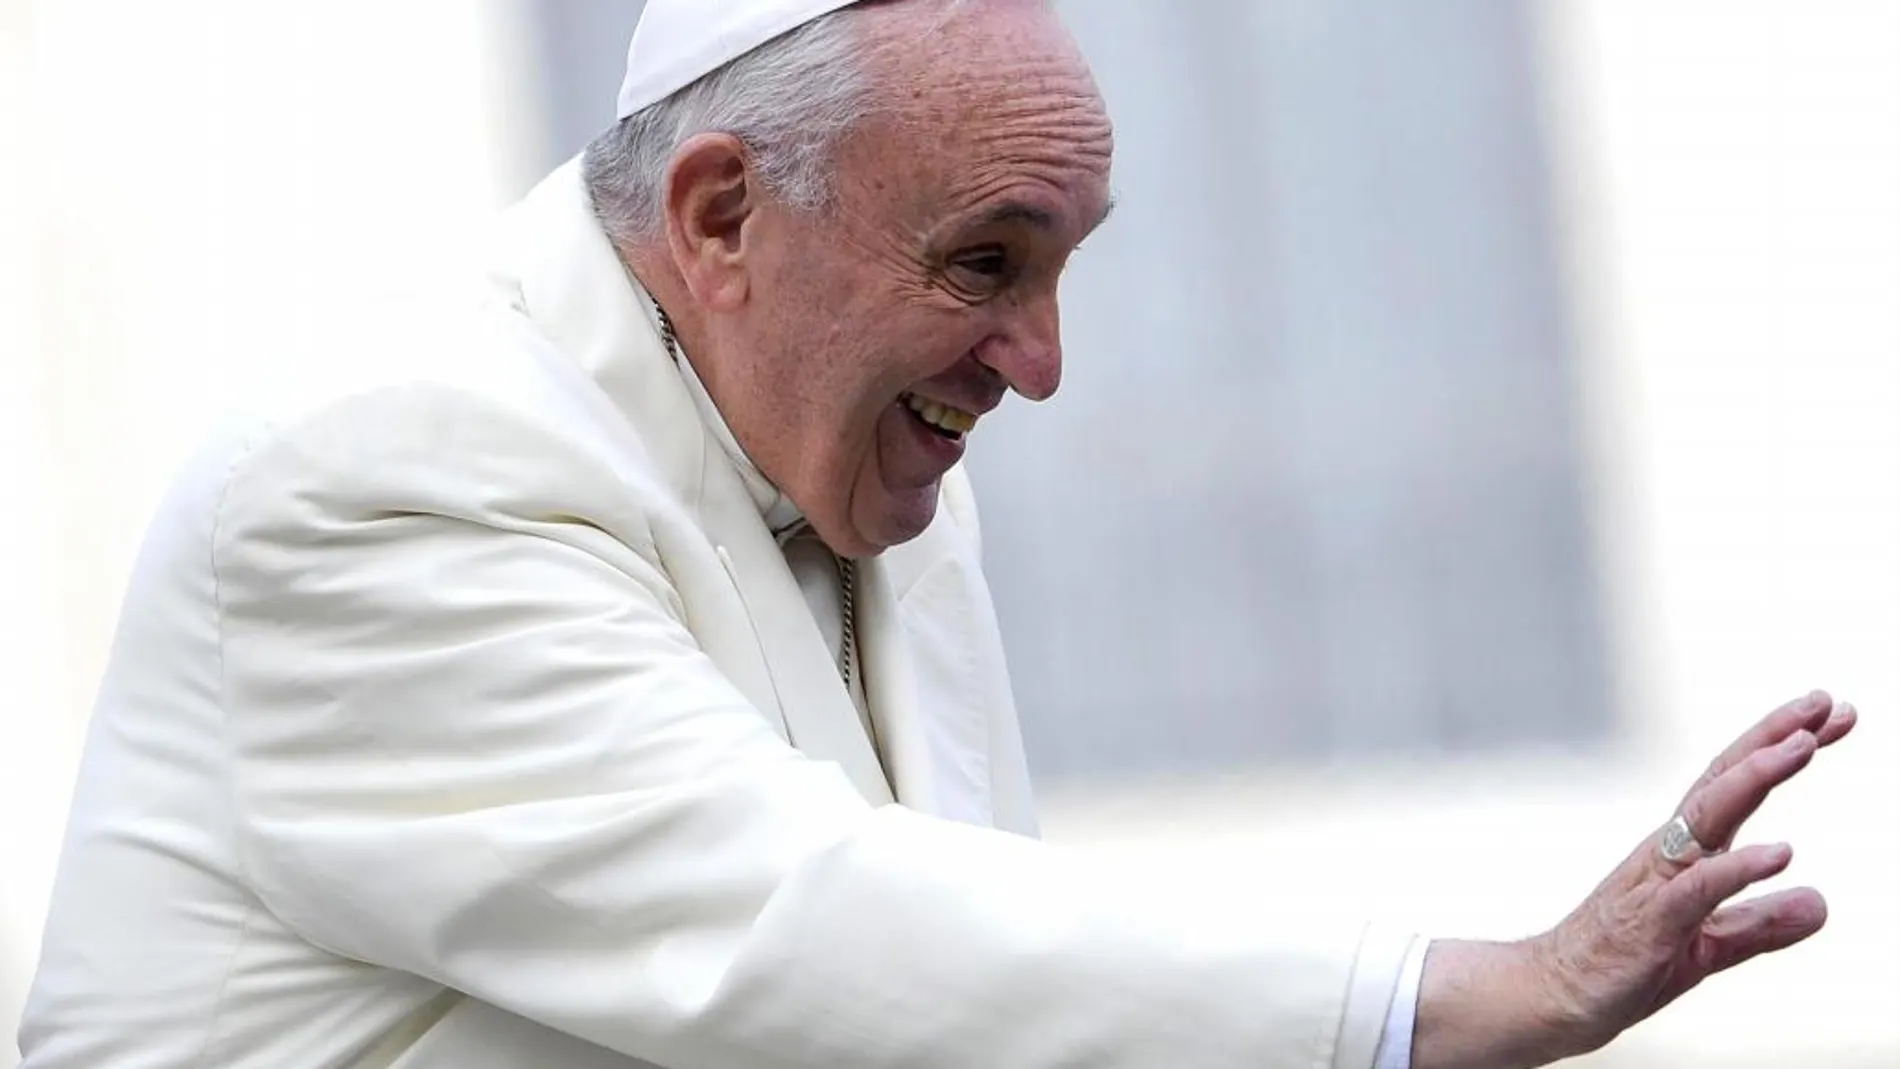 El Papa Francisco saluda a los fieles, ayer en la Plaza de San Pedro en el Vaticano